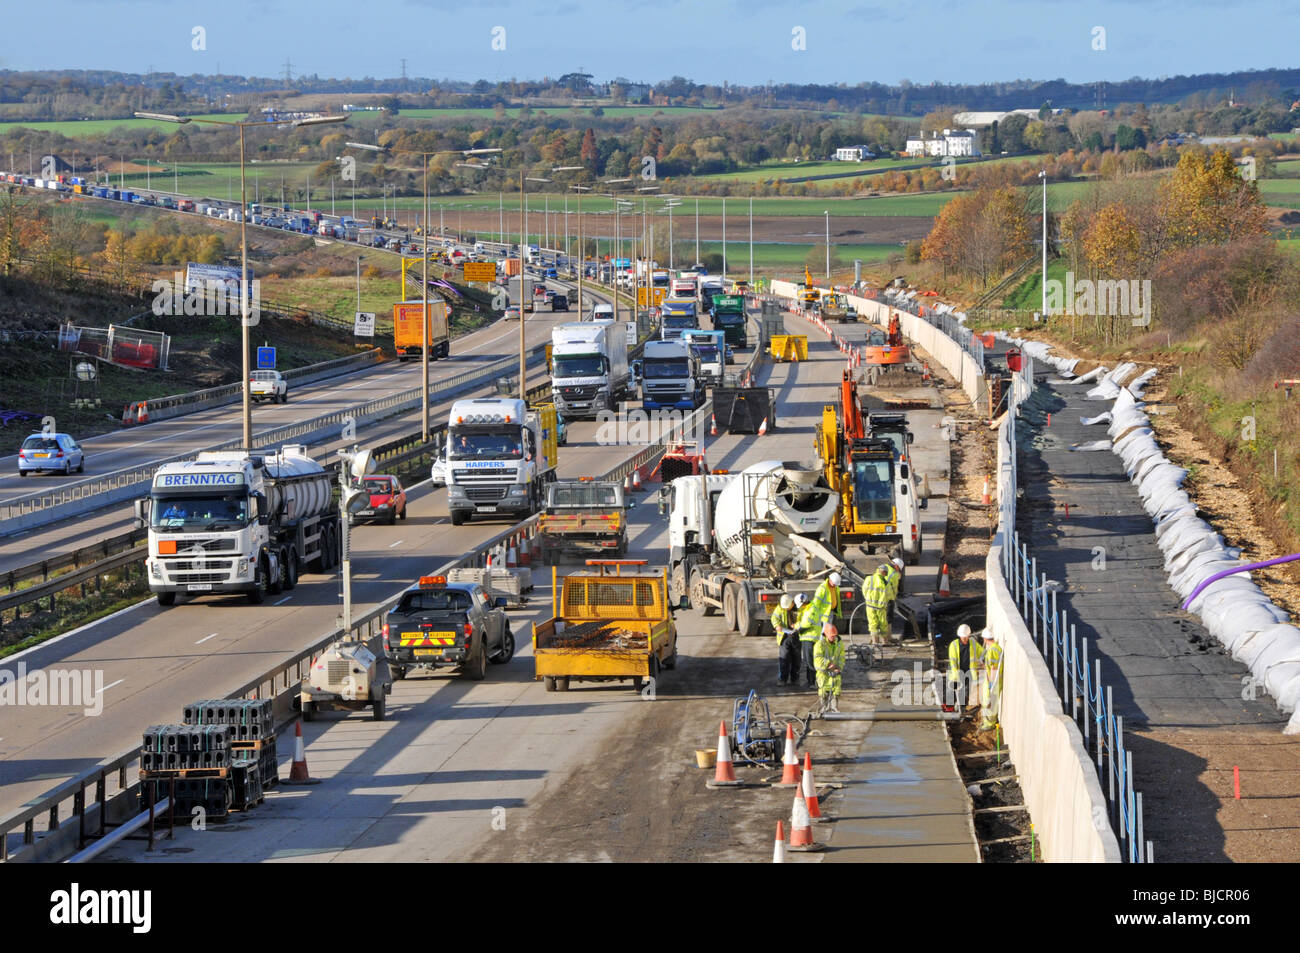 Travailleurs de la circulation et de la construction routière sur l'autoroute M25 qui s'étend à Quatre voies Essex Angleterre Royaume-Uni Banque D'Images